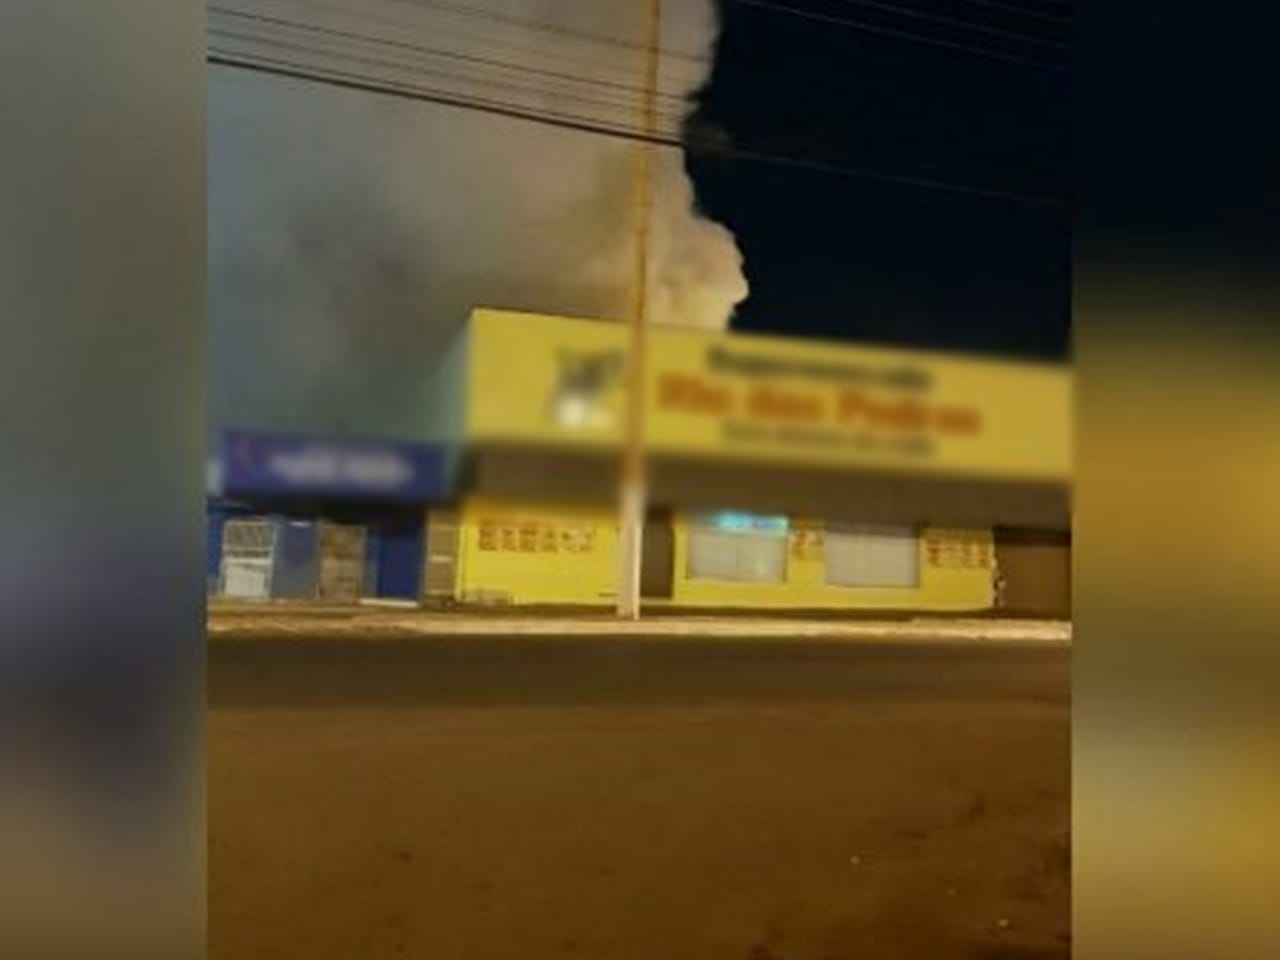 Um incêndio de grandes proporções atingiu o depósito de um supermercado localizado no Setor Jardim Cabral, em Itaberaí. (Foto: reprodução)